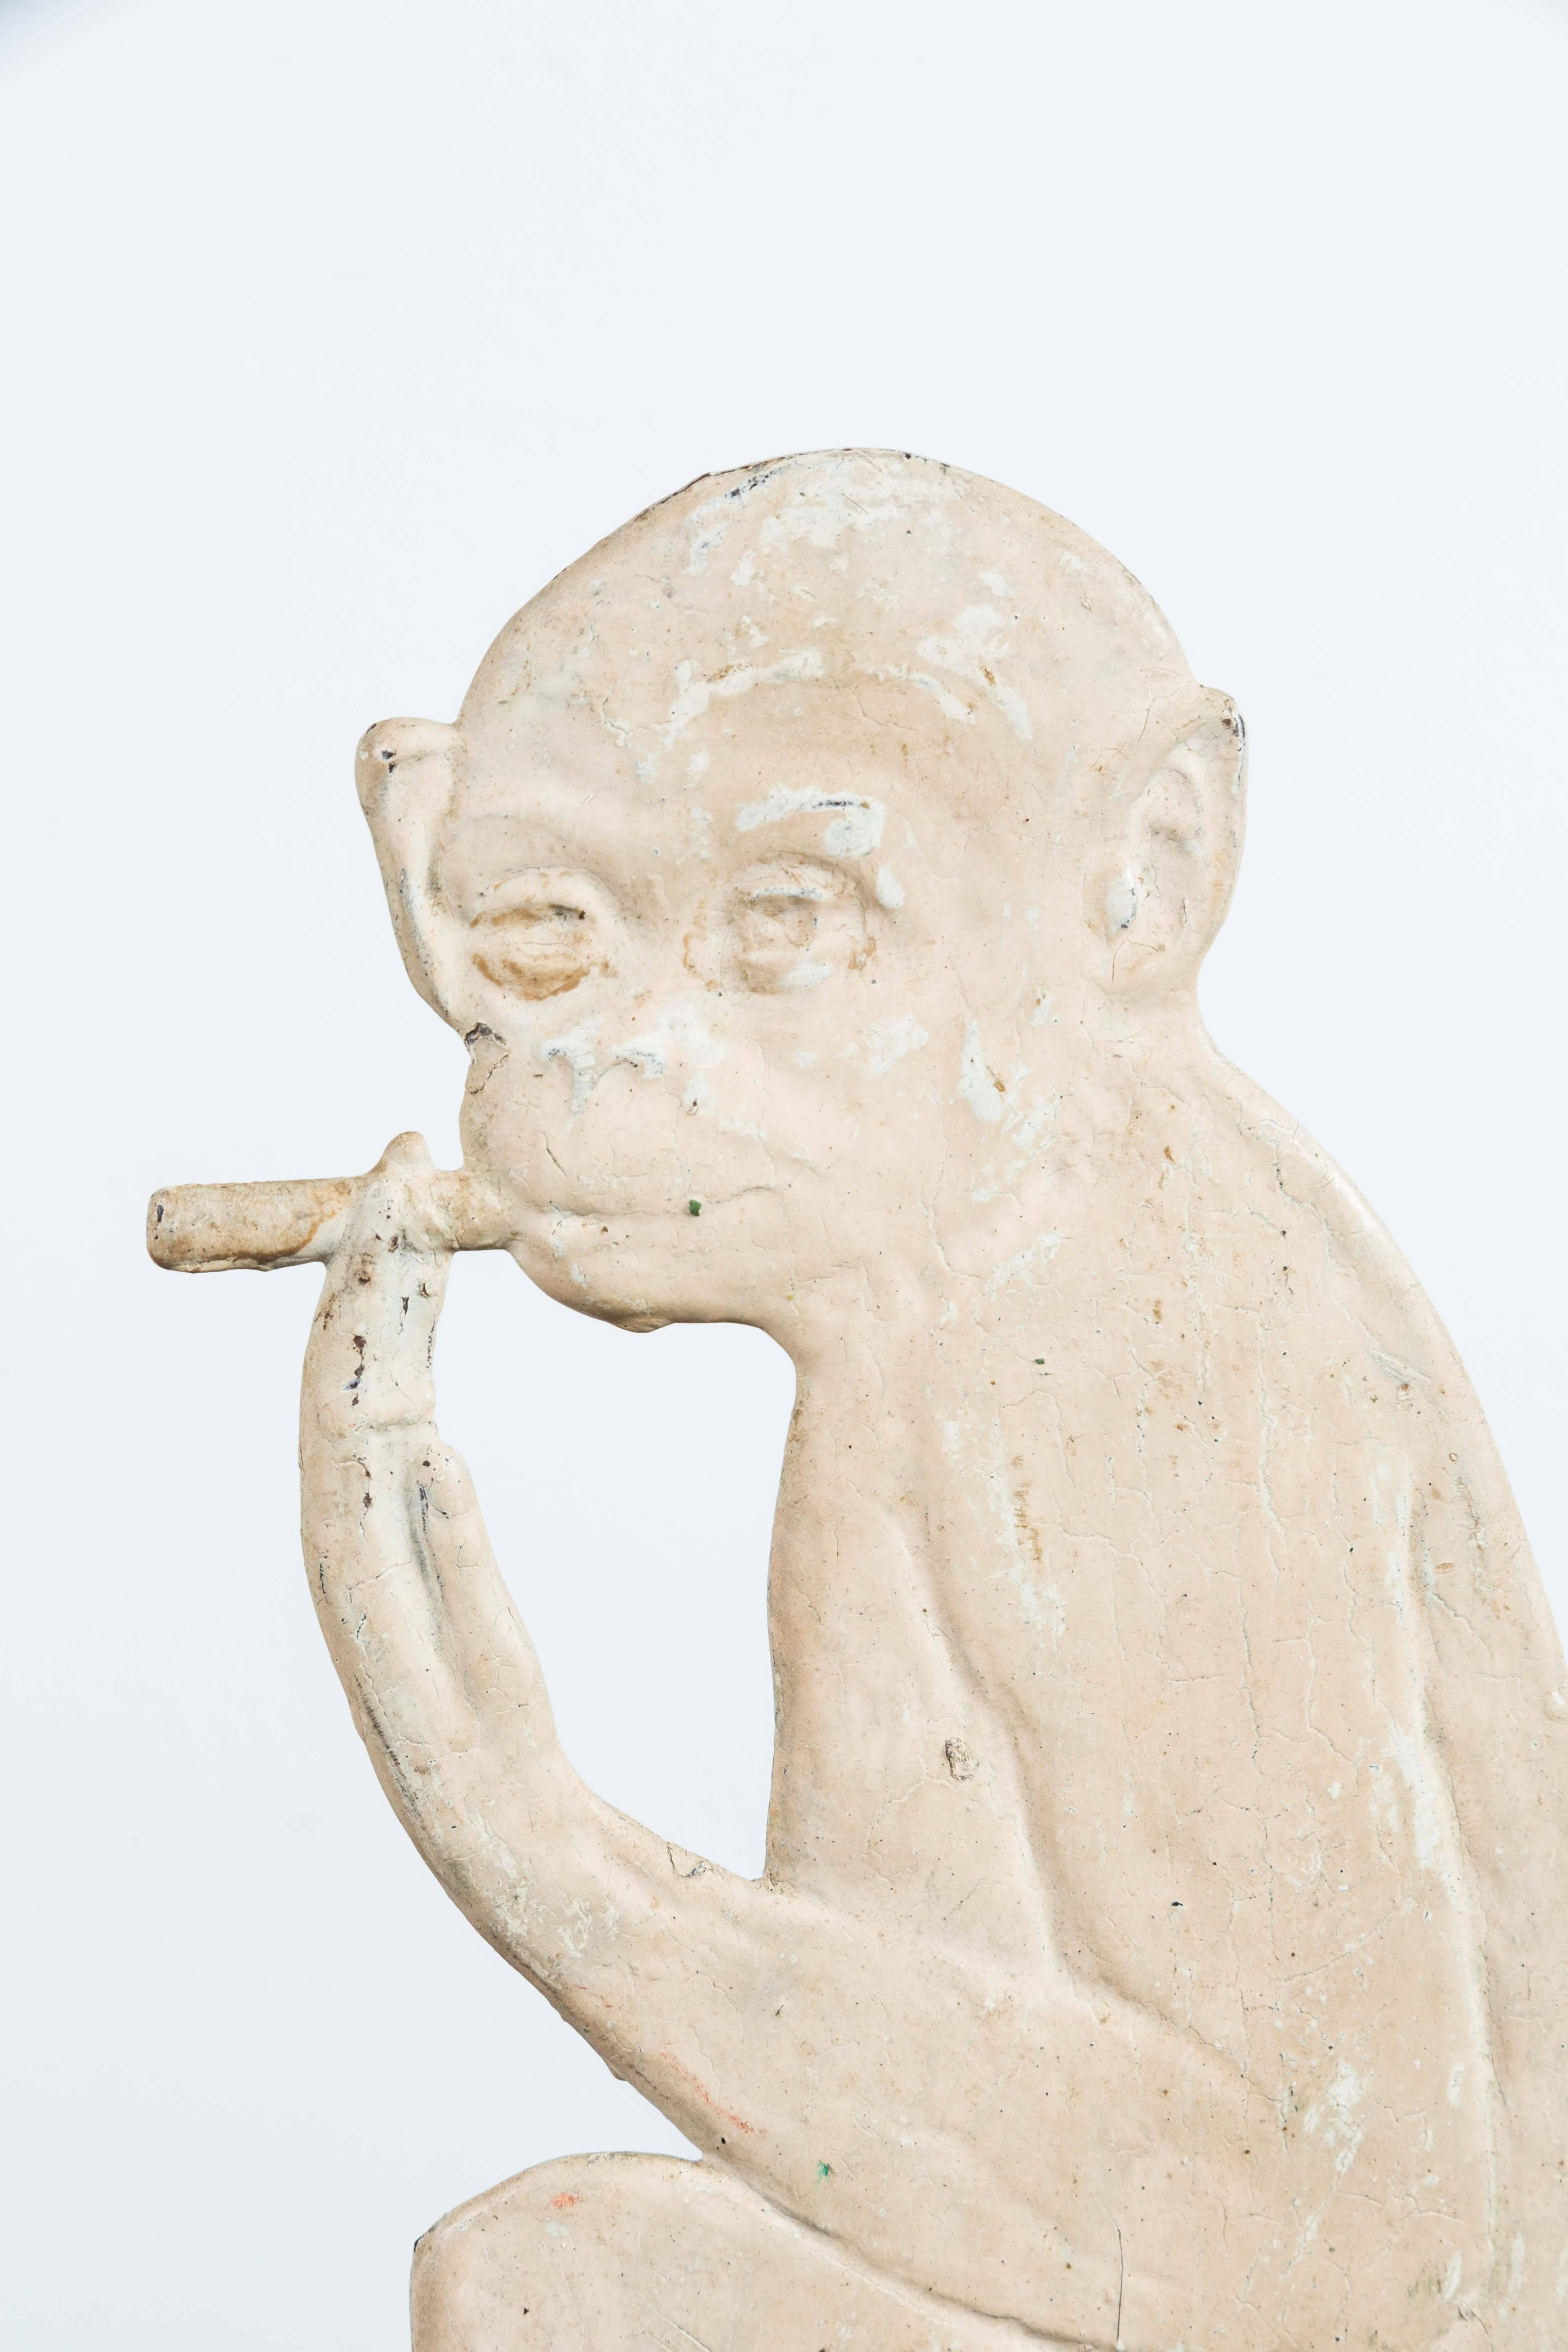 Folk Art Vintage Heavy Cast Iron Cigar Smoking Monkey Target